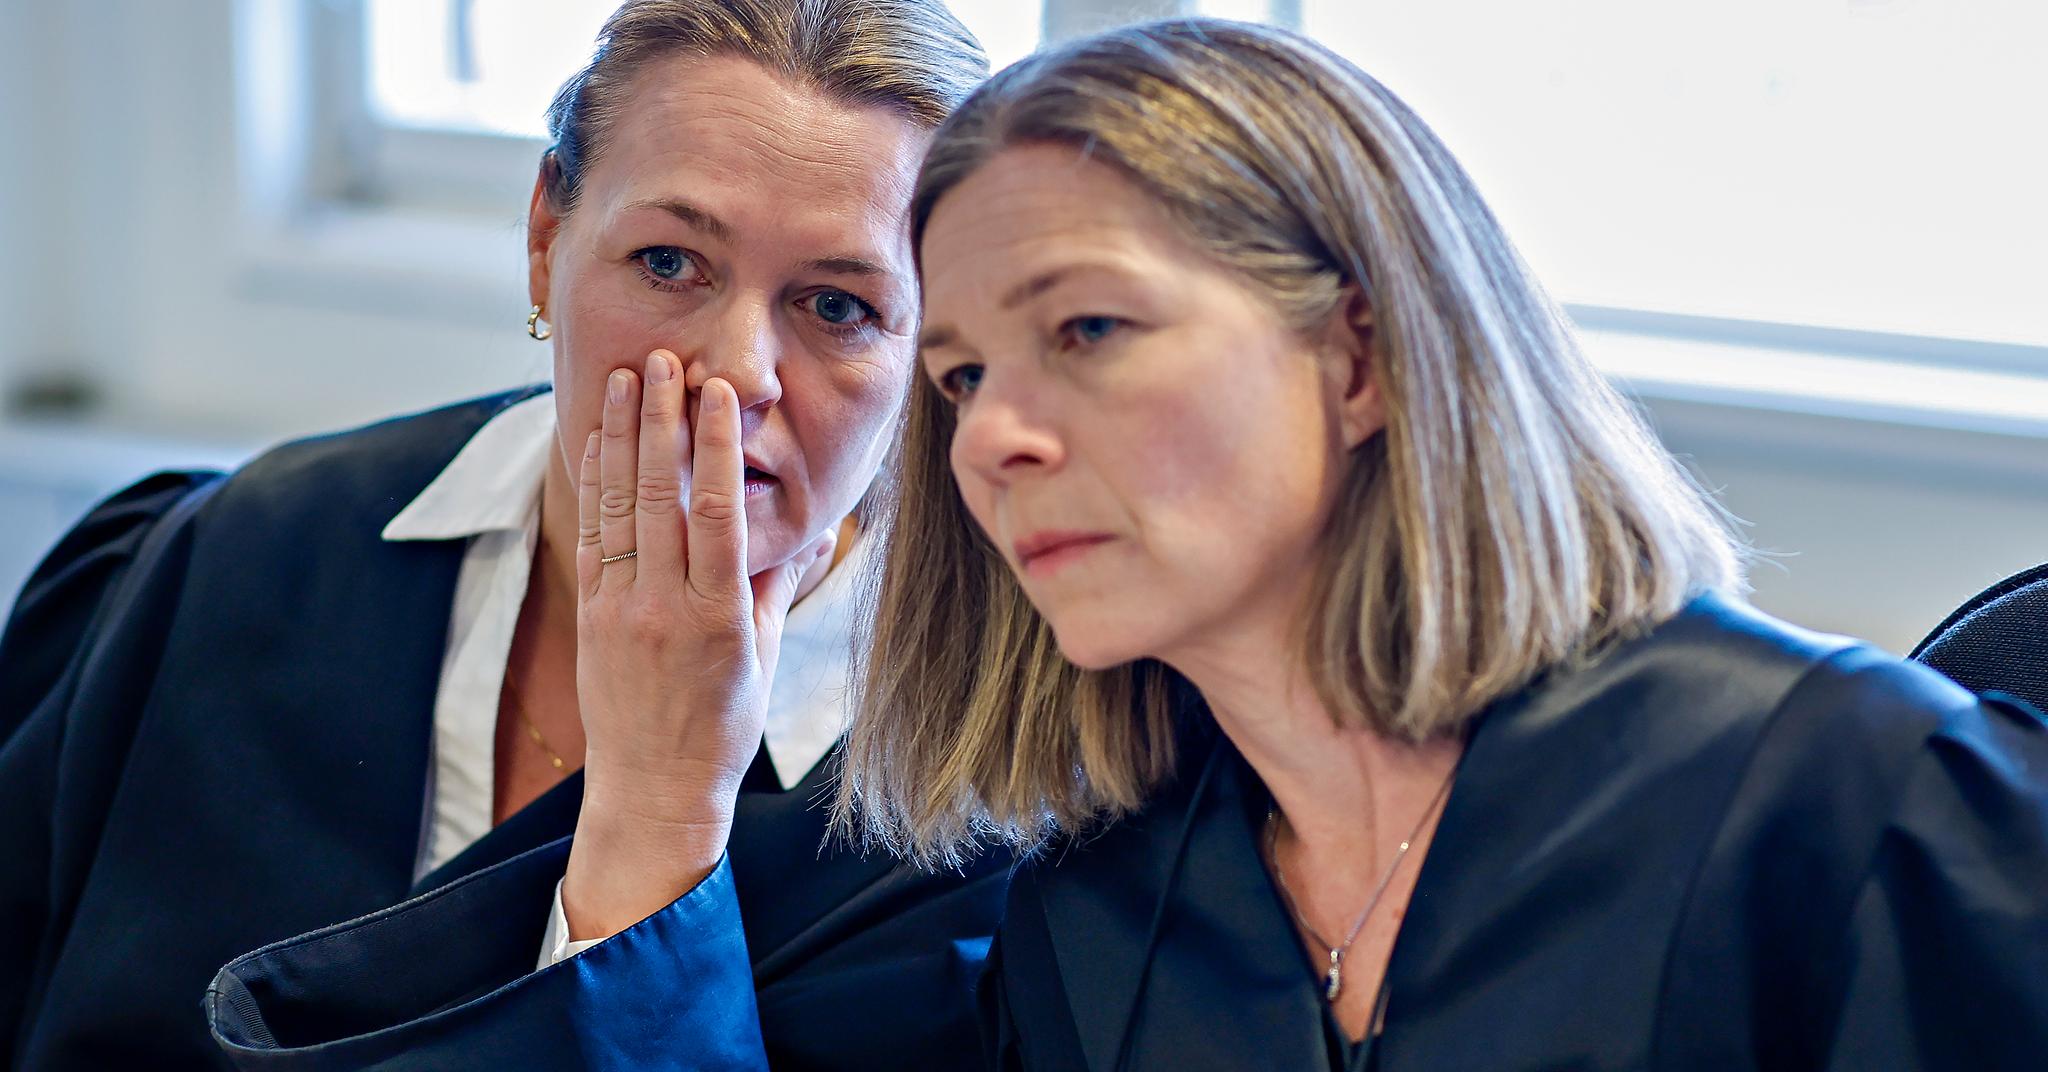 Bistandsadvokatene Hilde Cecilie Matre og Ingrid Aksnes reagerer kraftig på spredningen.